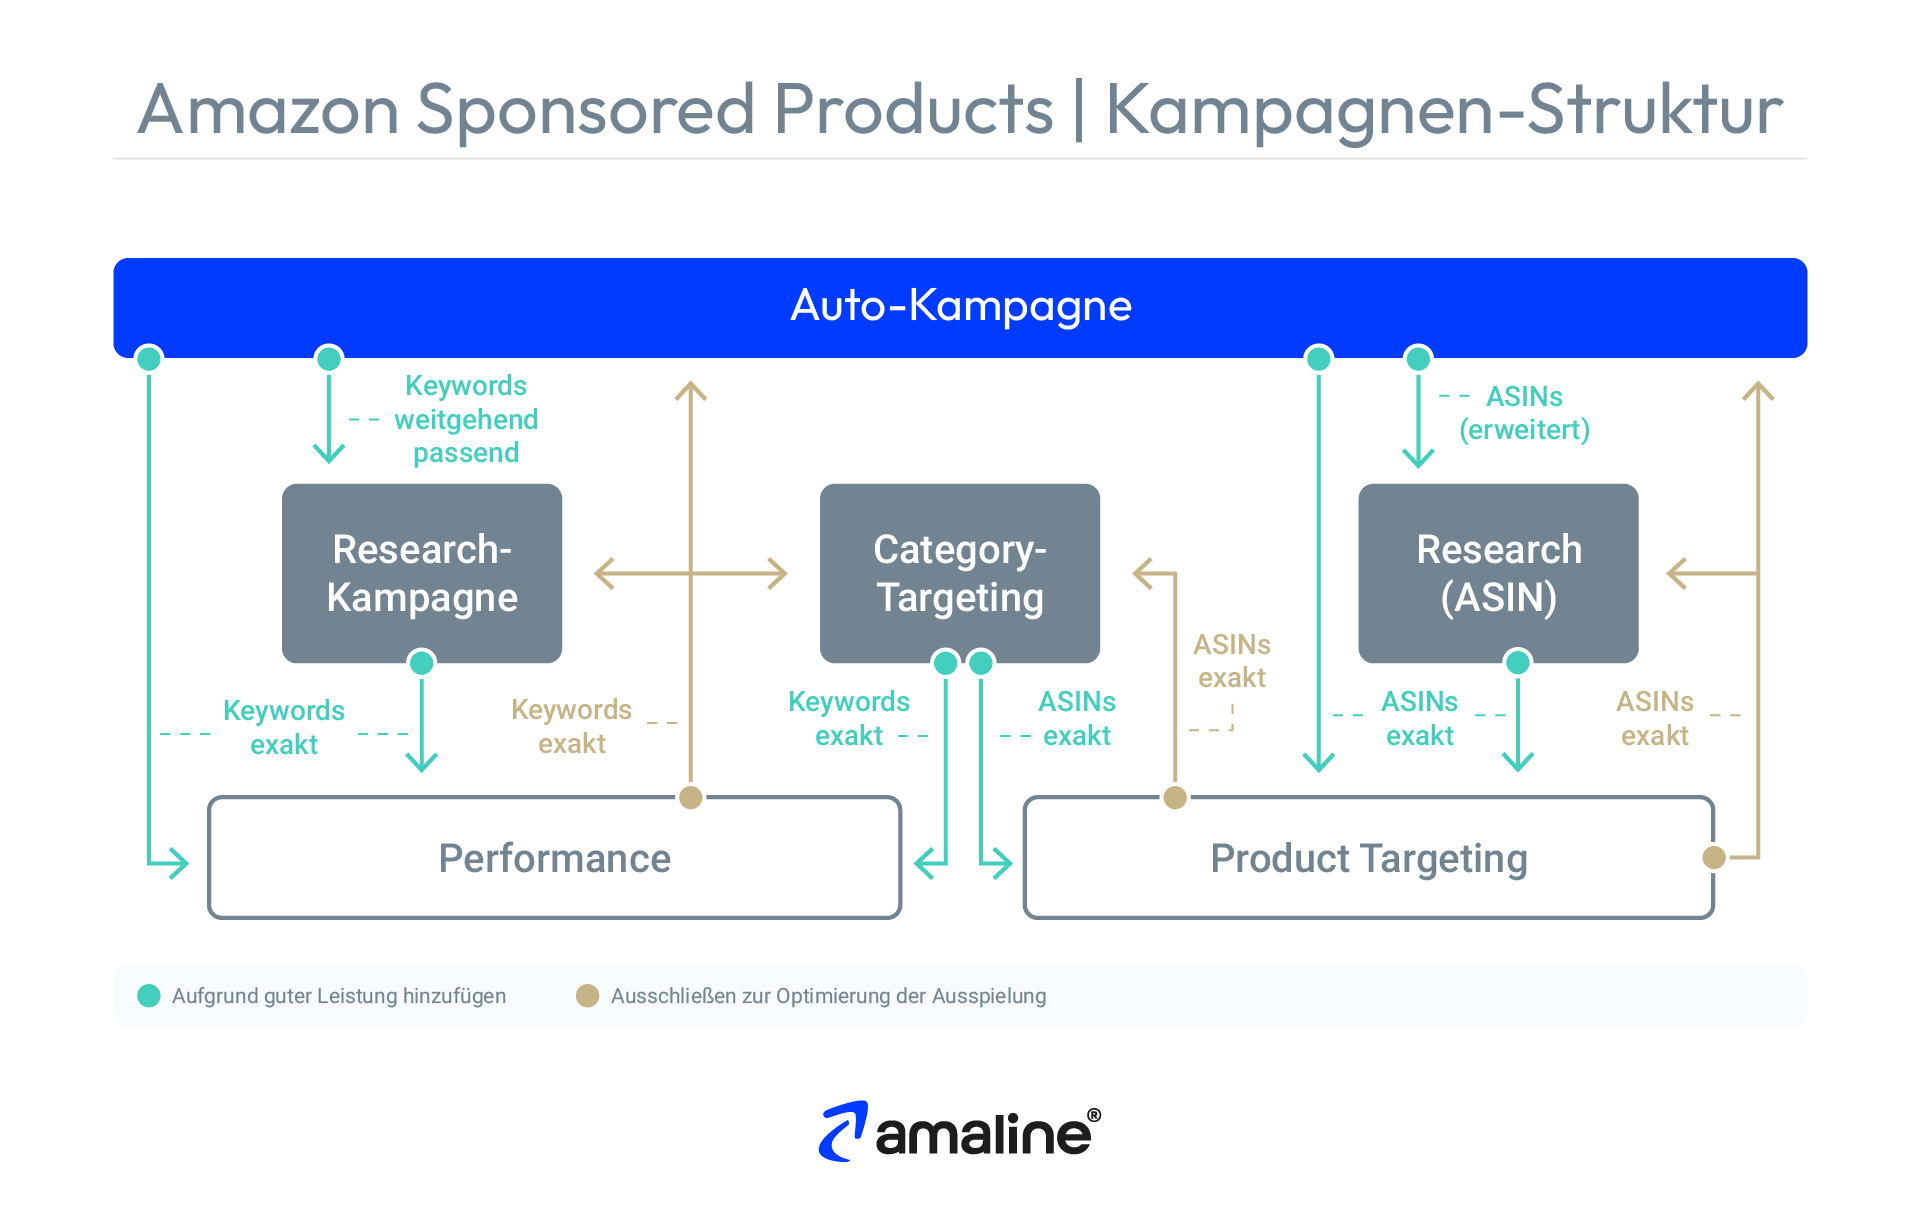 Die Grafik illustriert, wie man mittels Keyword-Harvesting eine Sponsored Products Kampagne in Amazon Ads optimieren kann. Voraussetzung hierfür ist die abgebildete Kampagnen-Struktur.